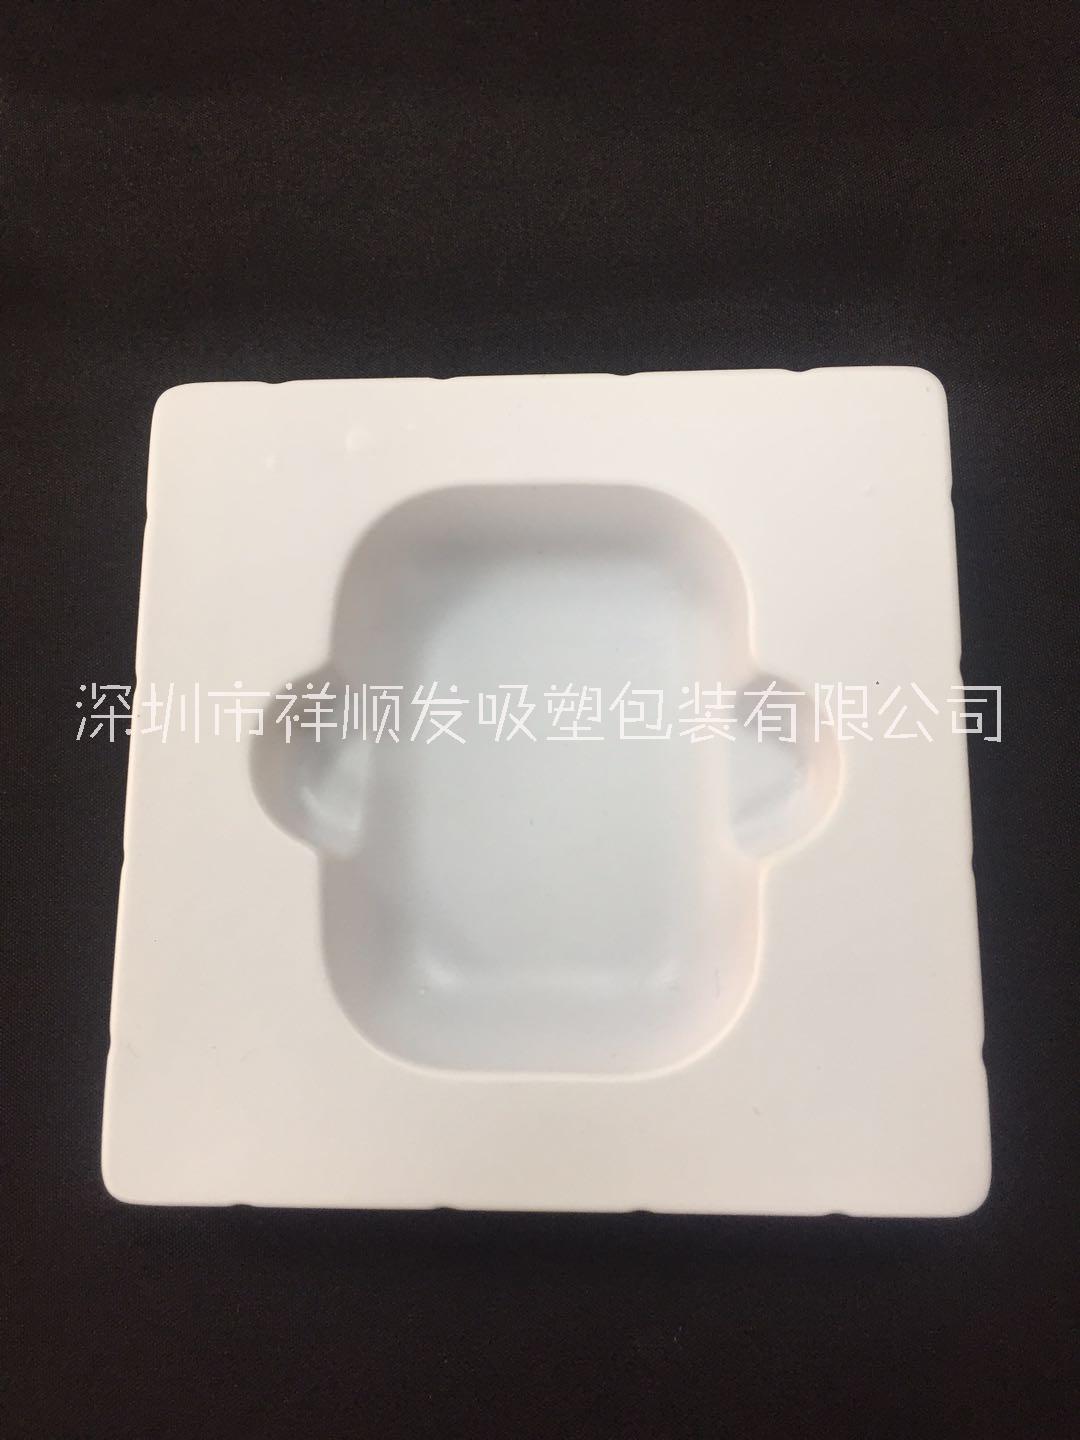 广东蓝牙3代耳机内托定制  蓝牙3代耳机内托生产厂家